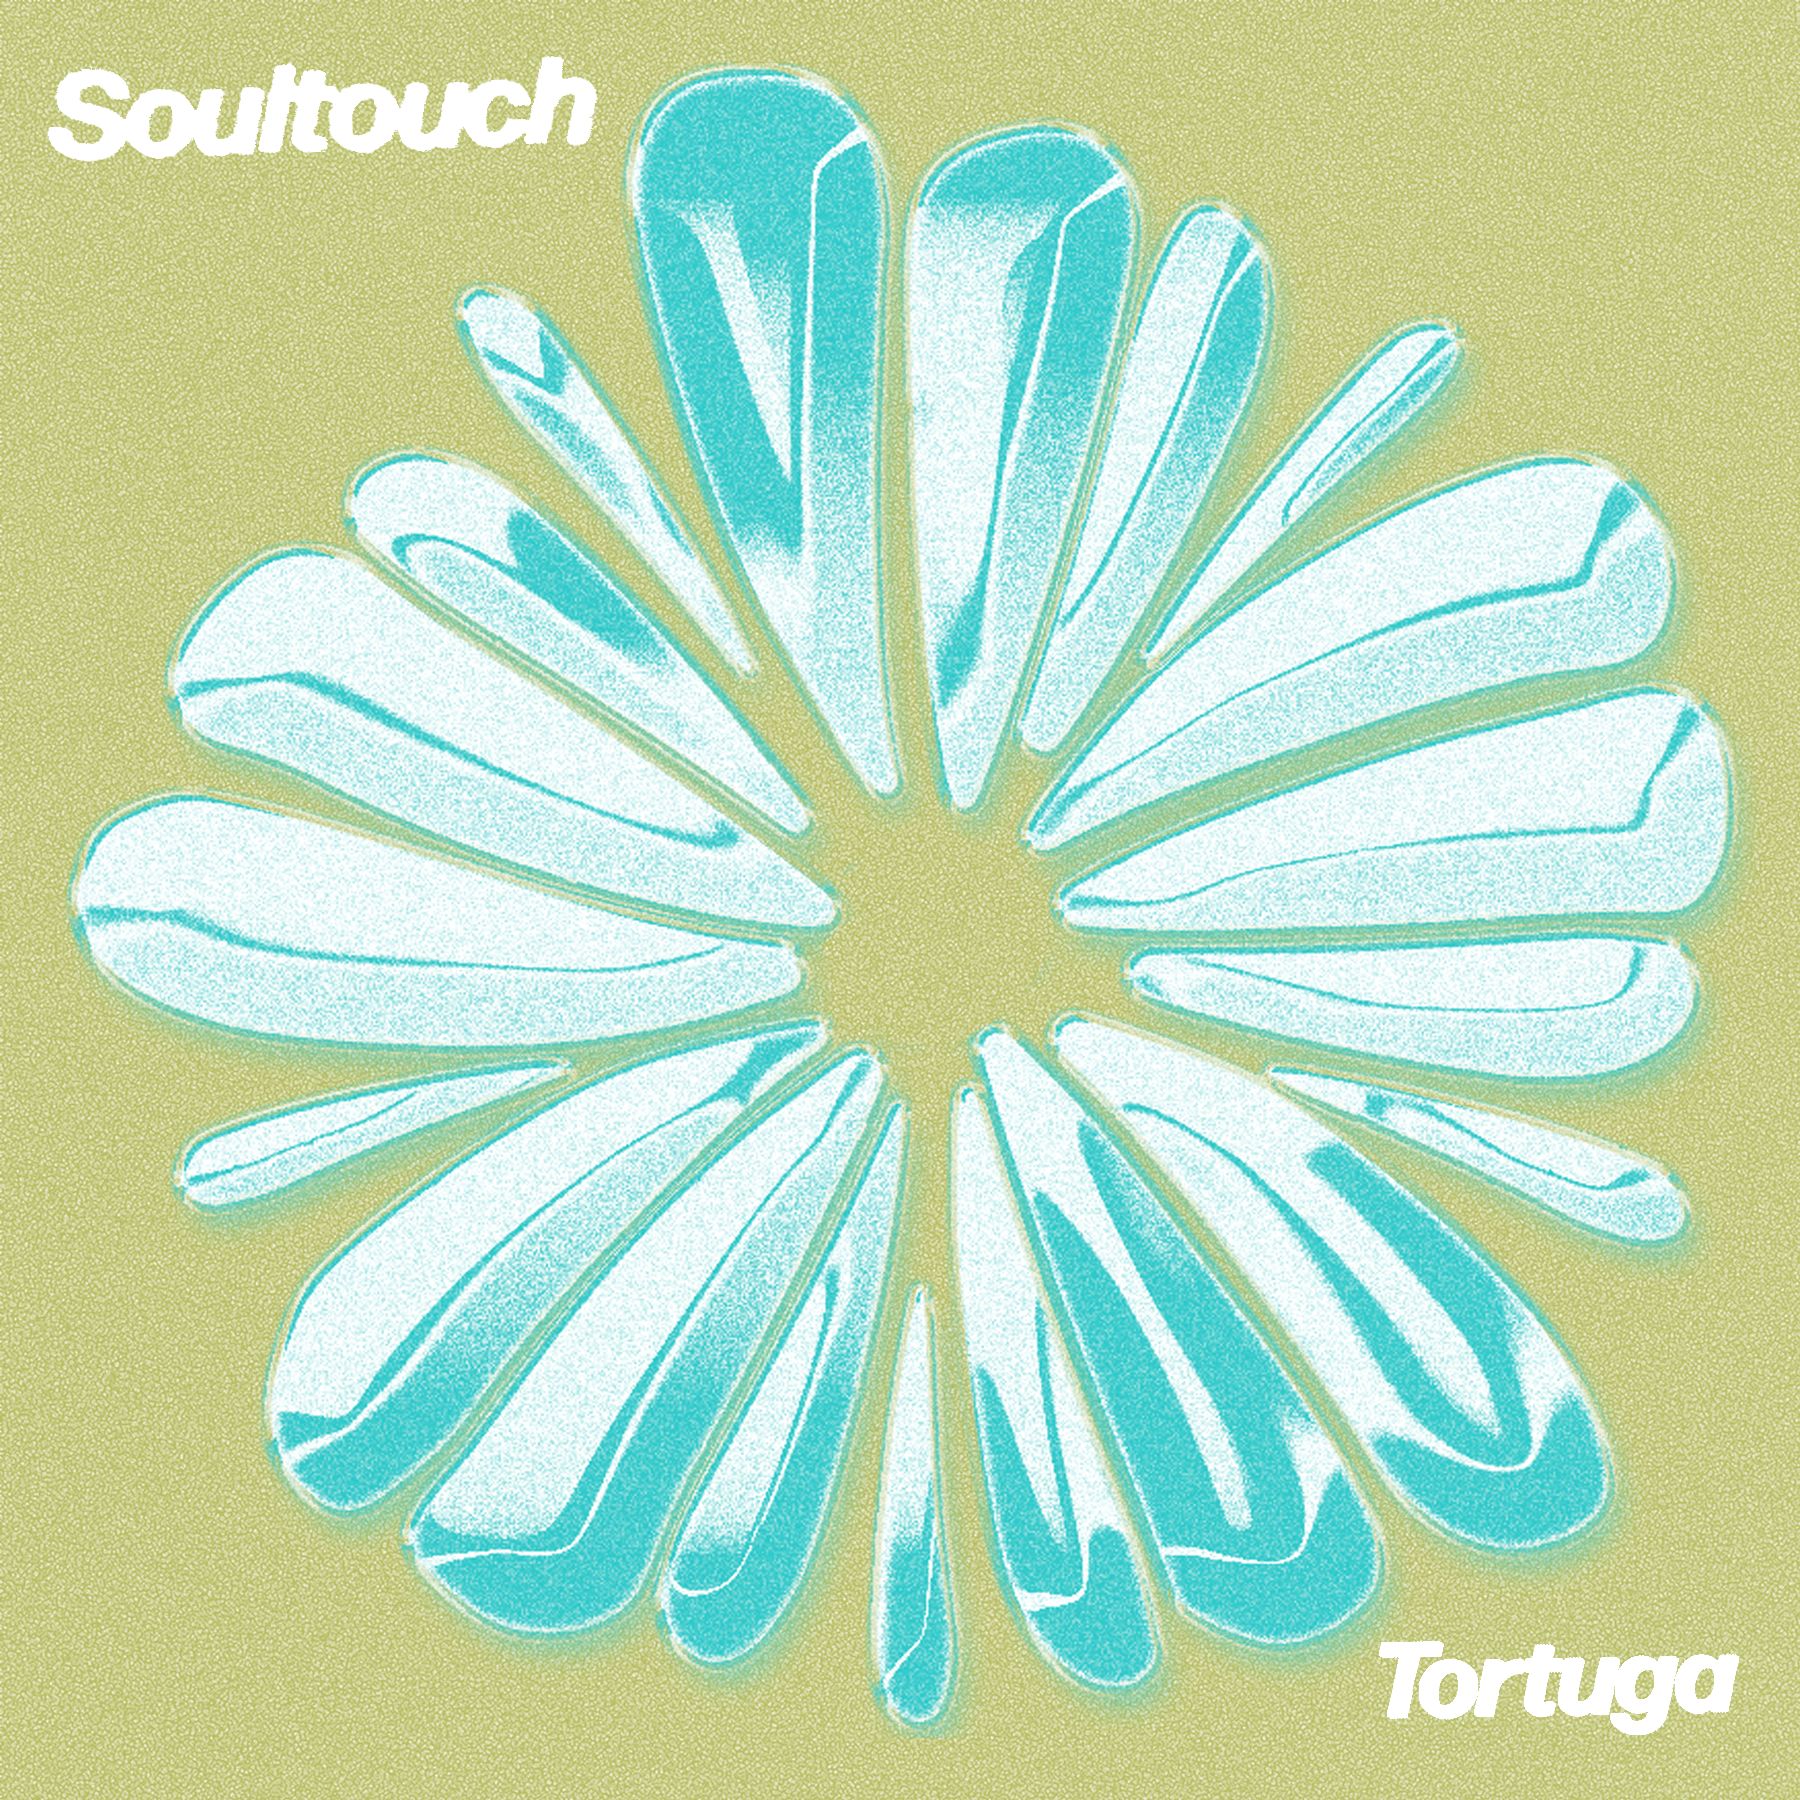 ...을 다운로드하십시오 PREMIERE : Tortuga - Soultouch